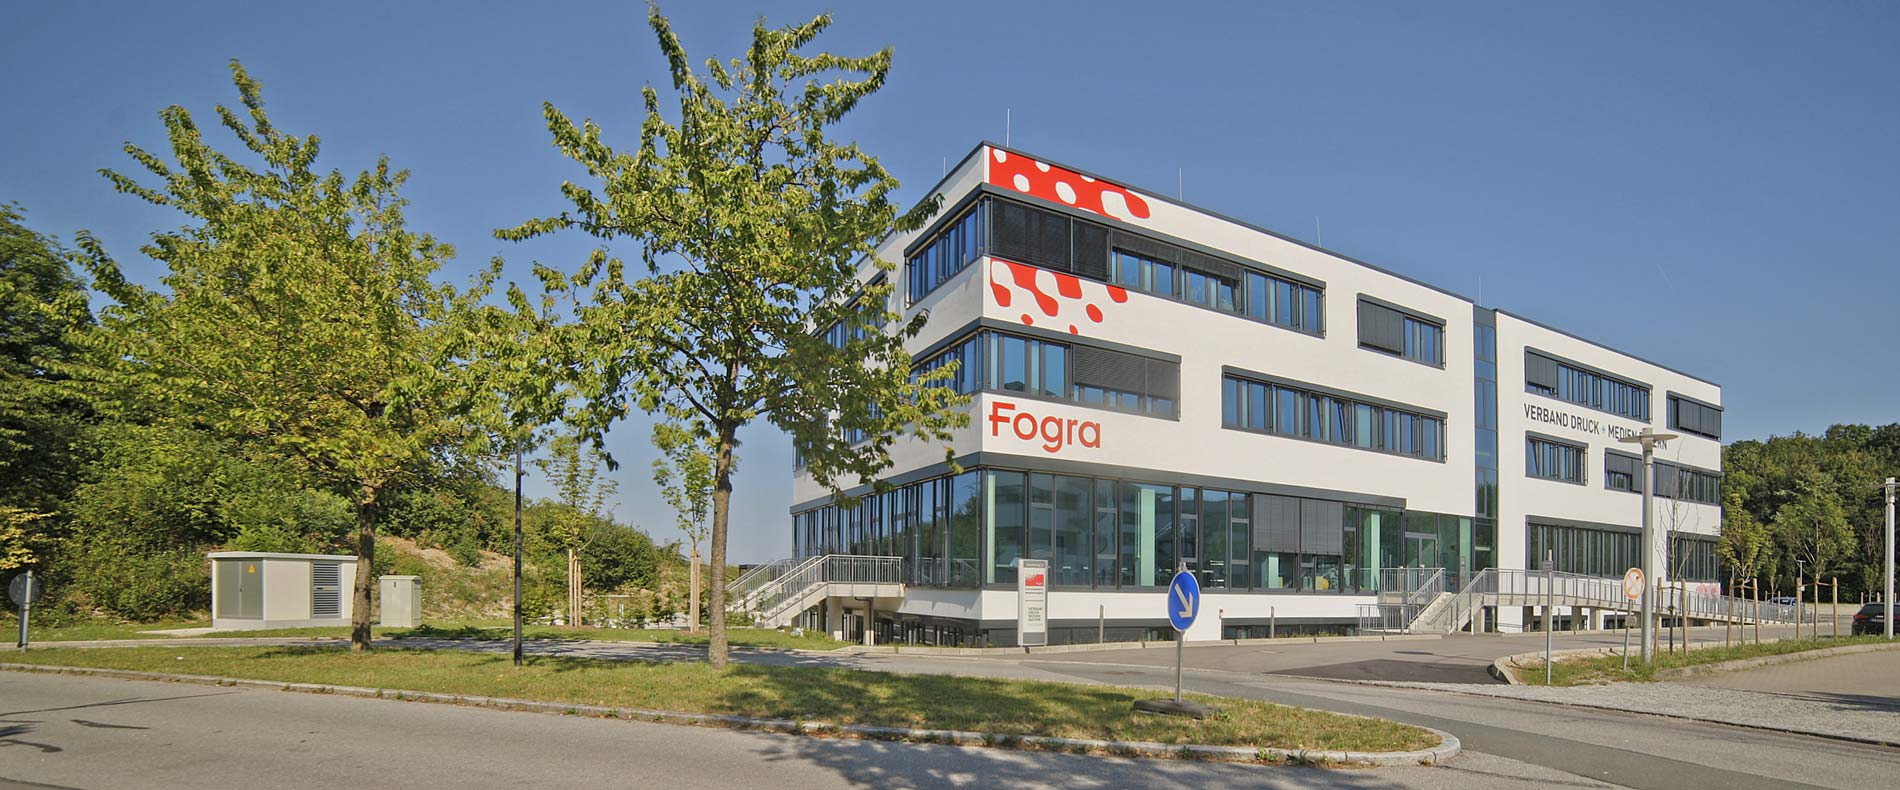 igb - Referenz Industriebau Fogra München